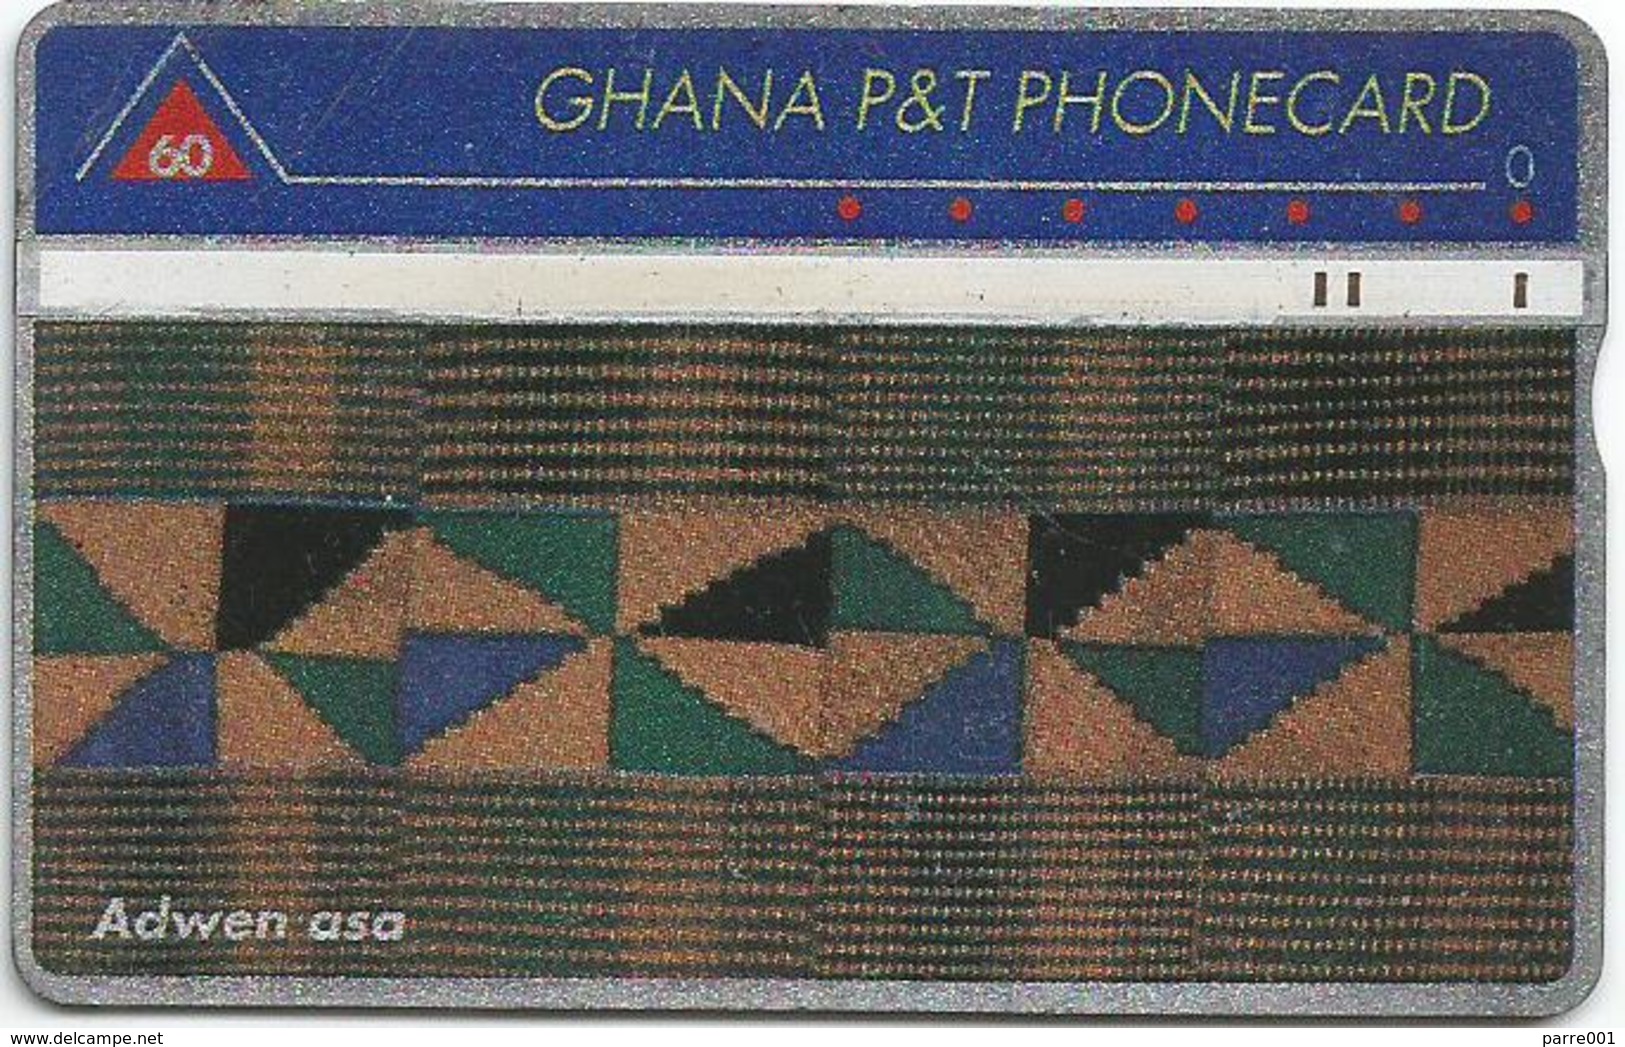 Ghana P&T 60 UT Kente Cloth Adwen Asa Phonecard - Ghana